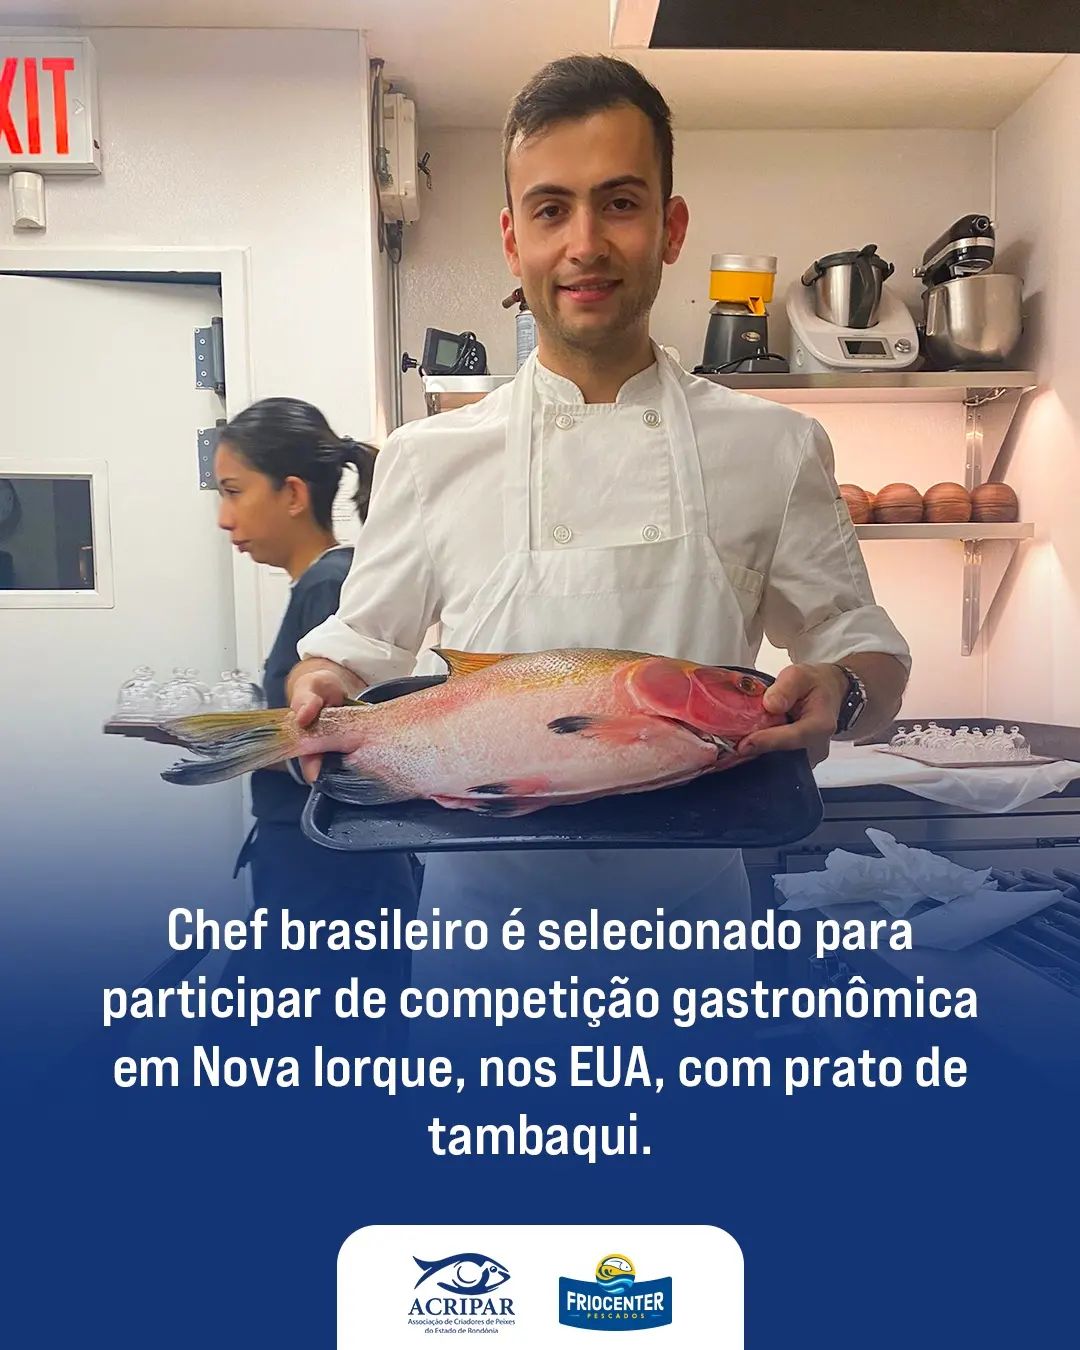 O chef brasileiro residente nos EUA, Vítor Mendes, foi um dos dez selecionados para participar de uma tradicional competição gastronômica